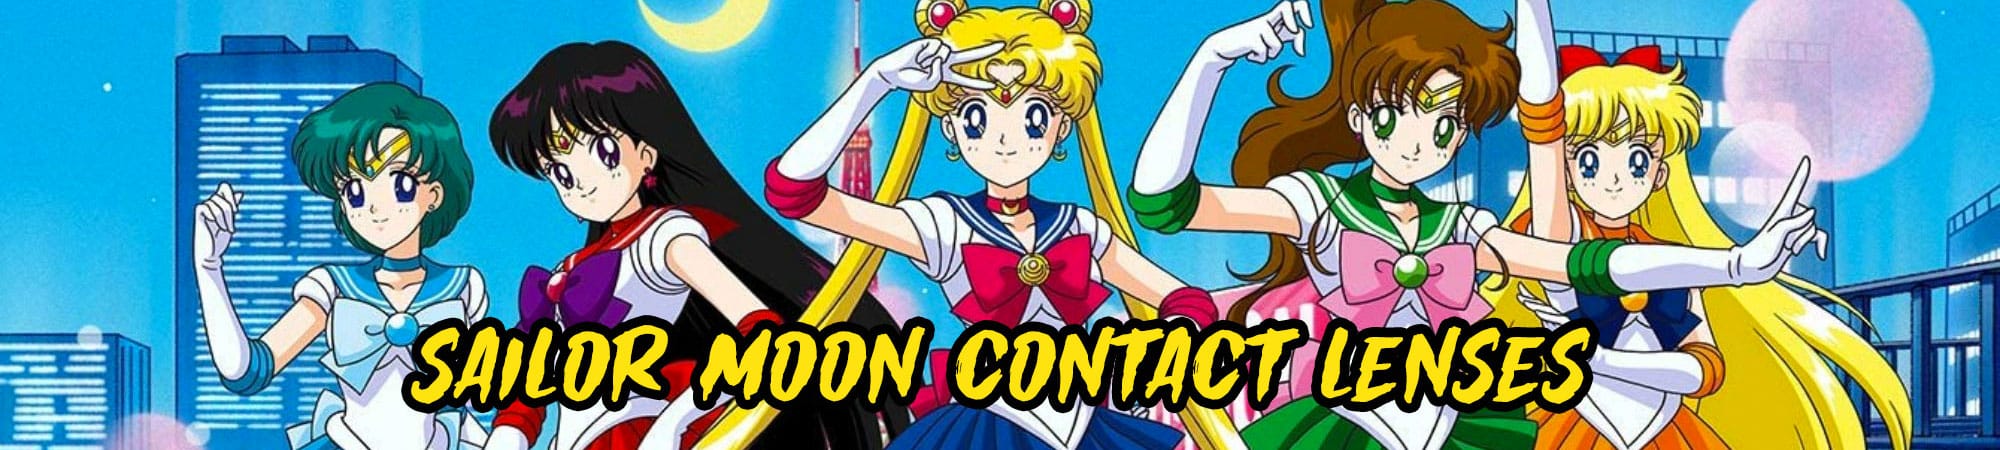 Sailor Moon Contact Lenses